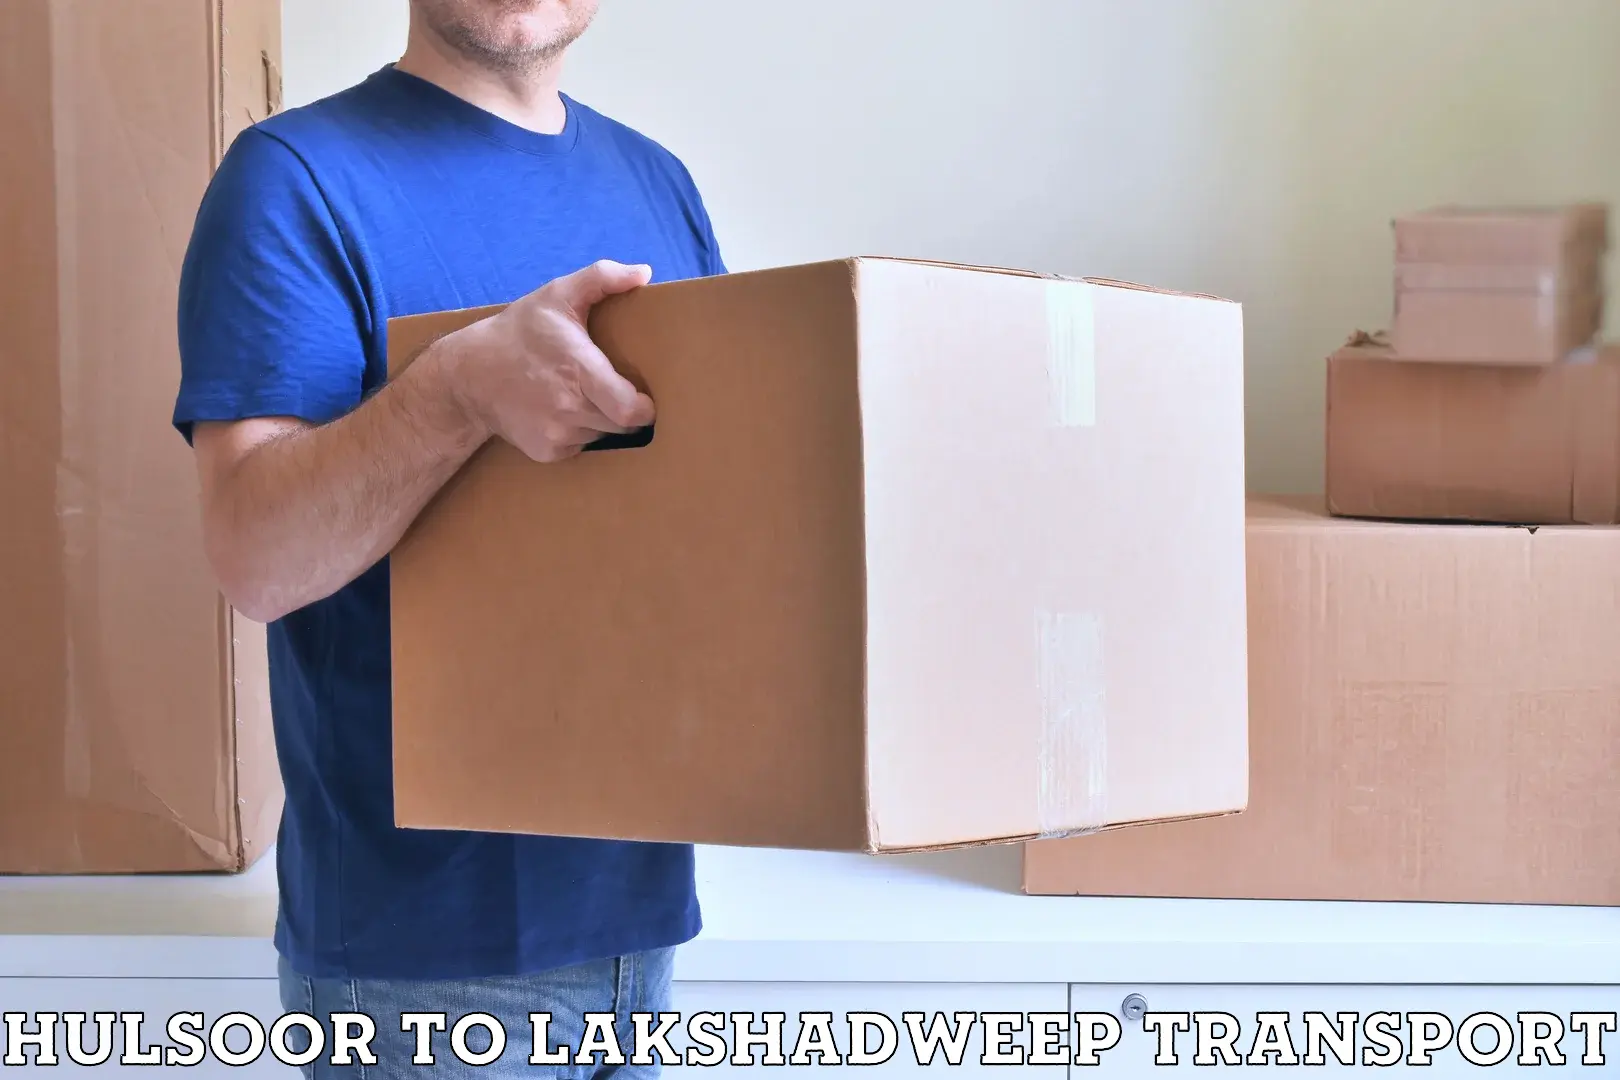 Vehicle parcel service Hulsoor to Lakshadweep